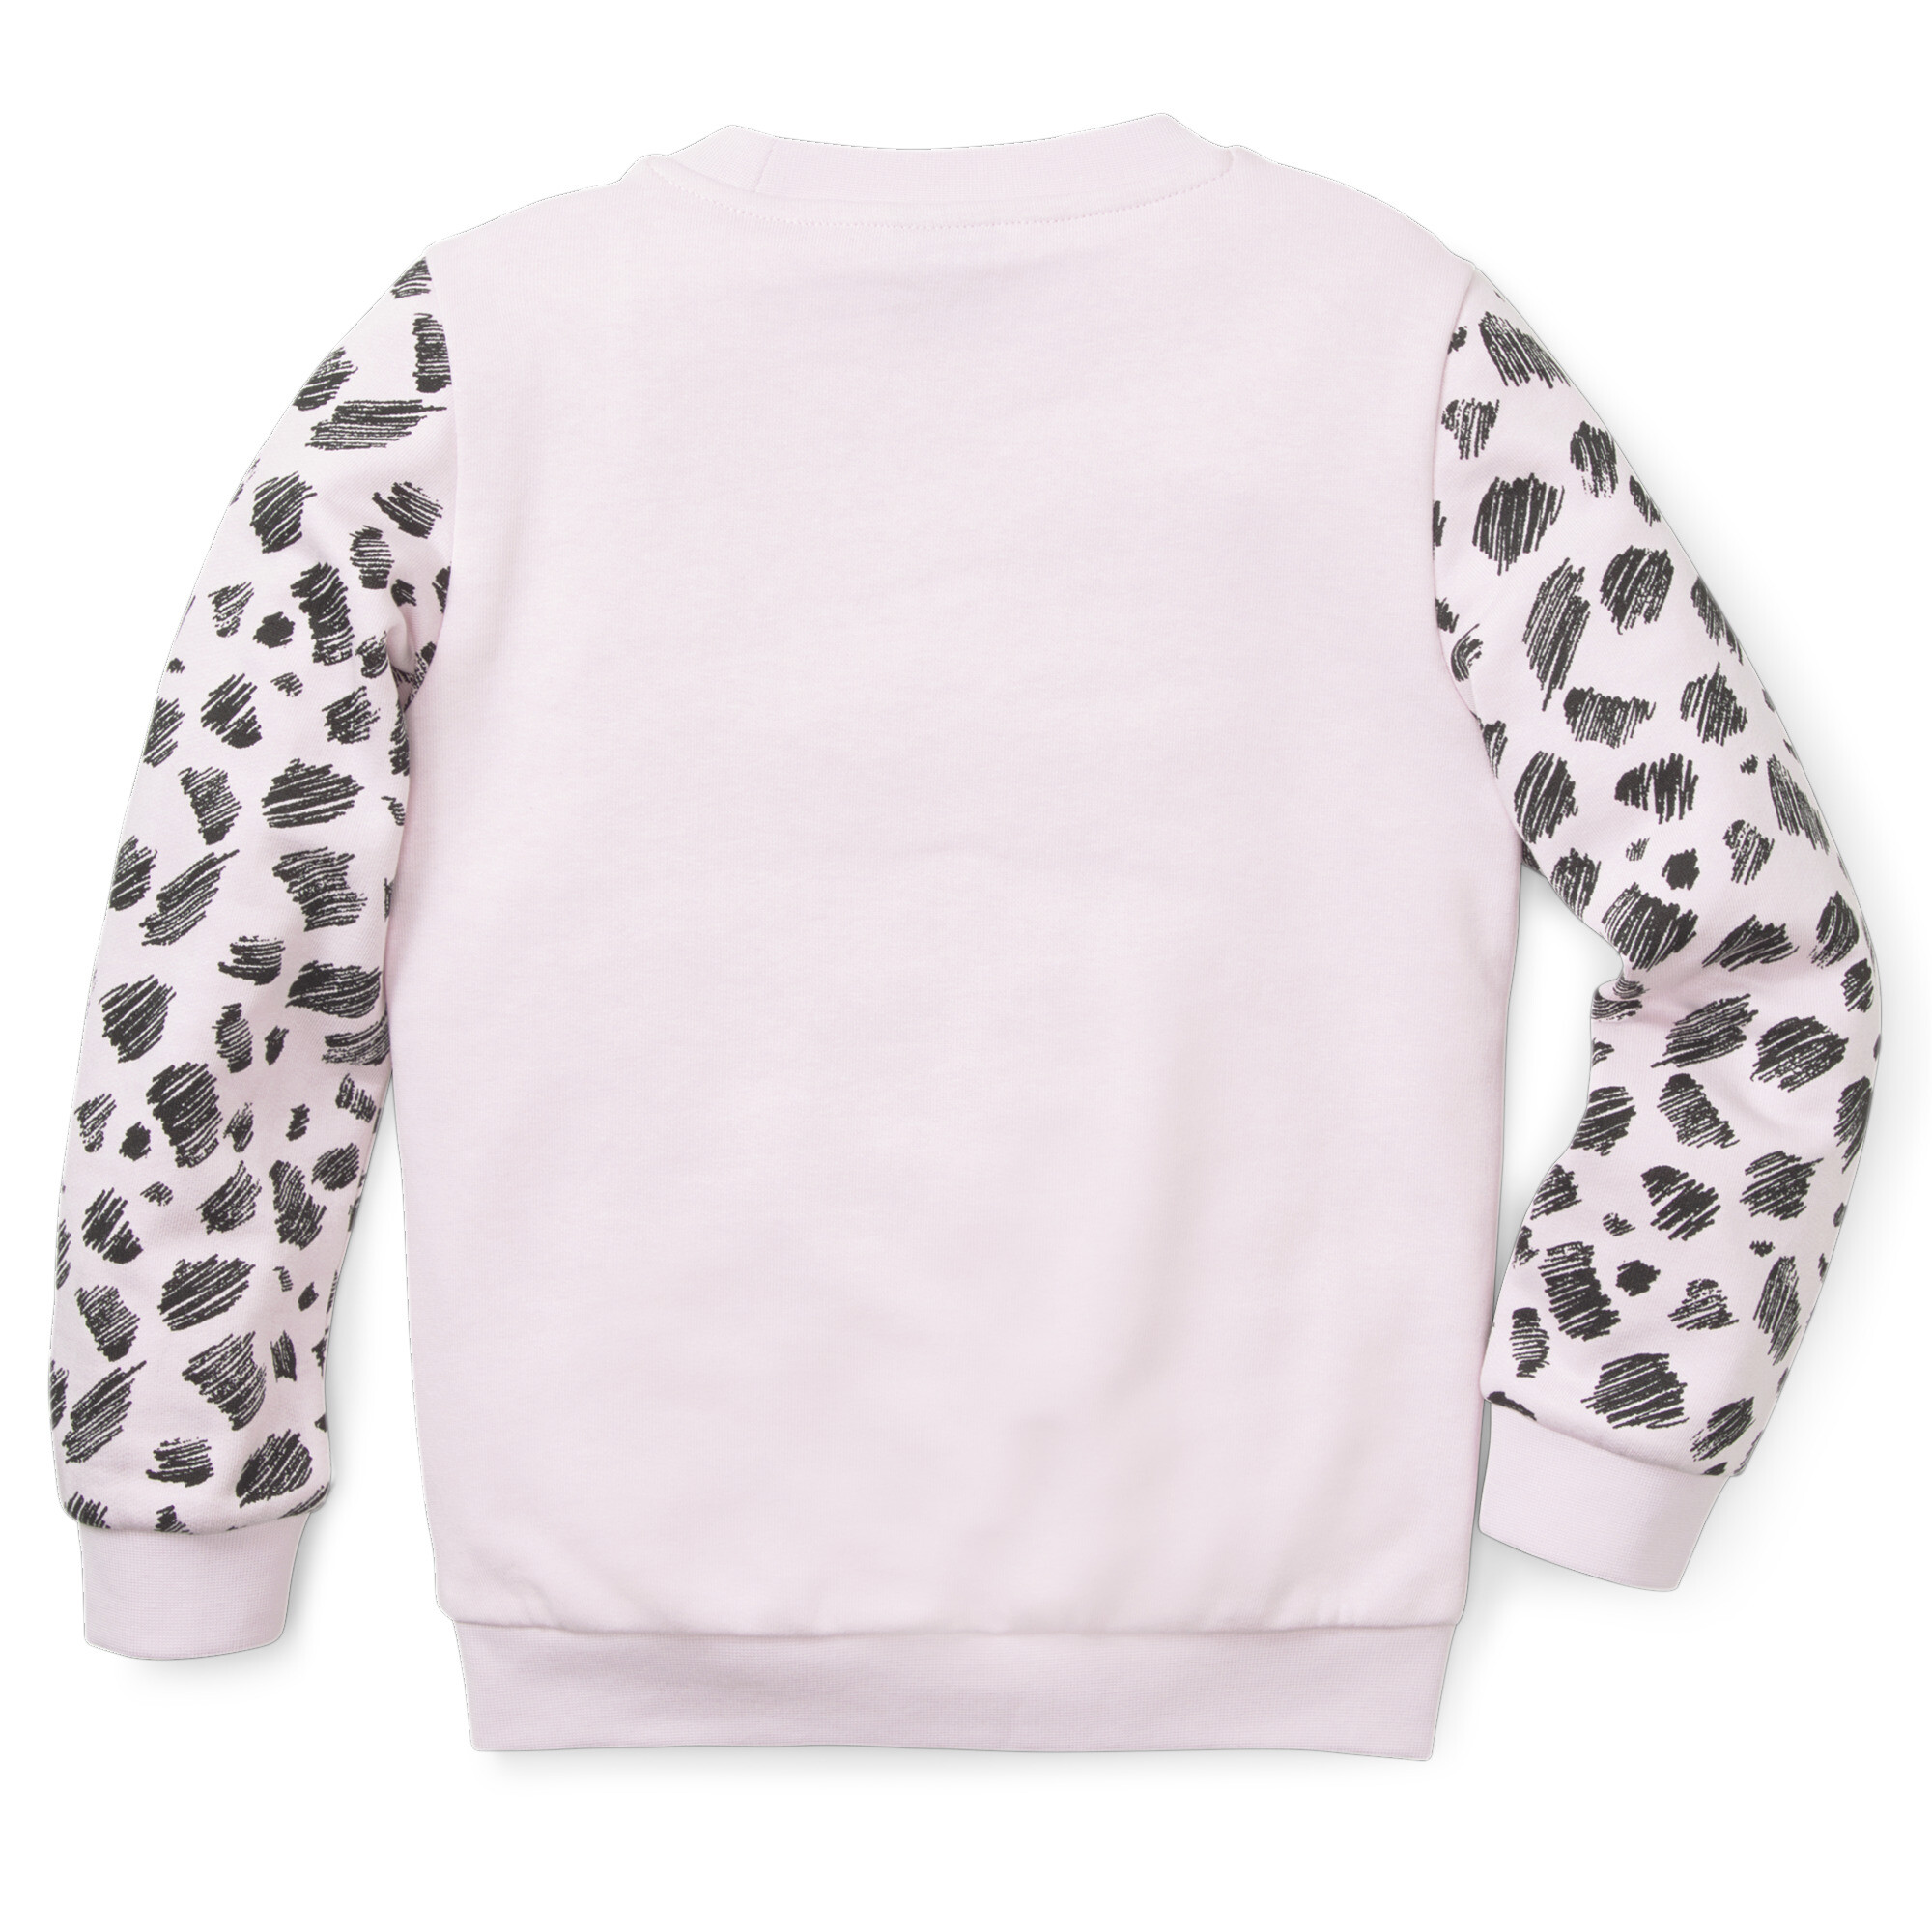 Essentials+ Puma Mates Crew Neck Kids Sweatshirt, Pink Sweatshirt, Size 4-5Y Sweatshirt, Clothing